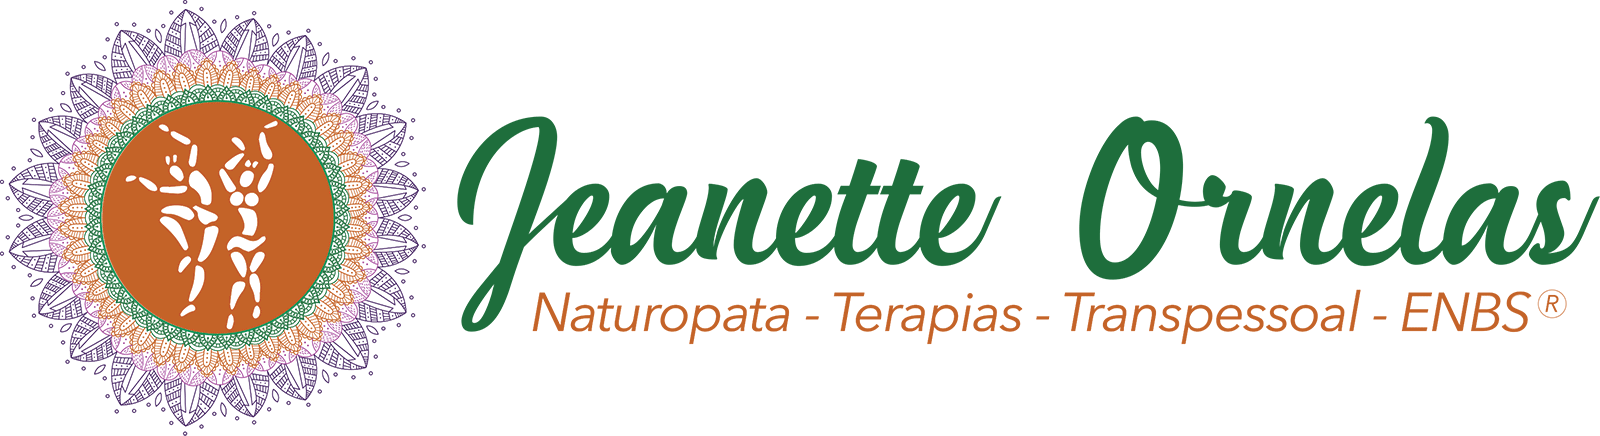 Logo_jeanette_retangular_transparente_1600pxl